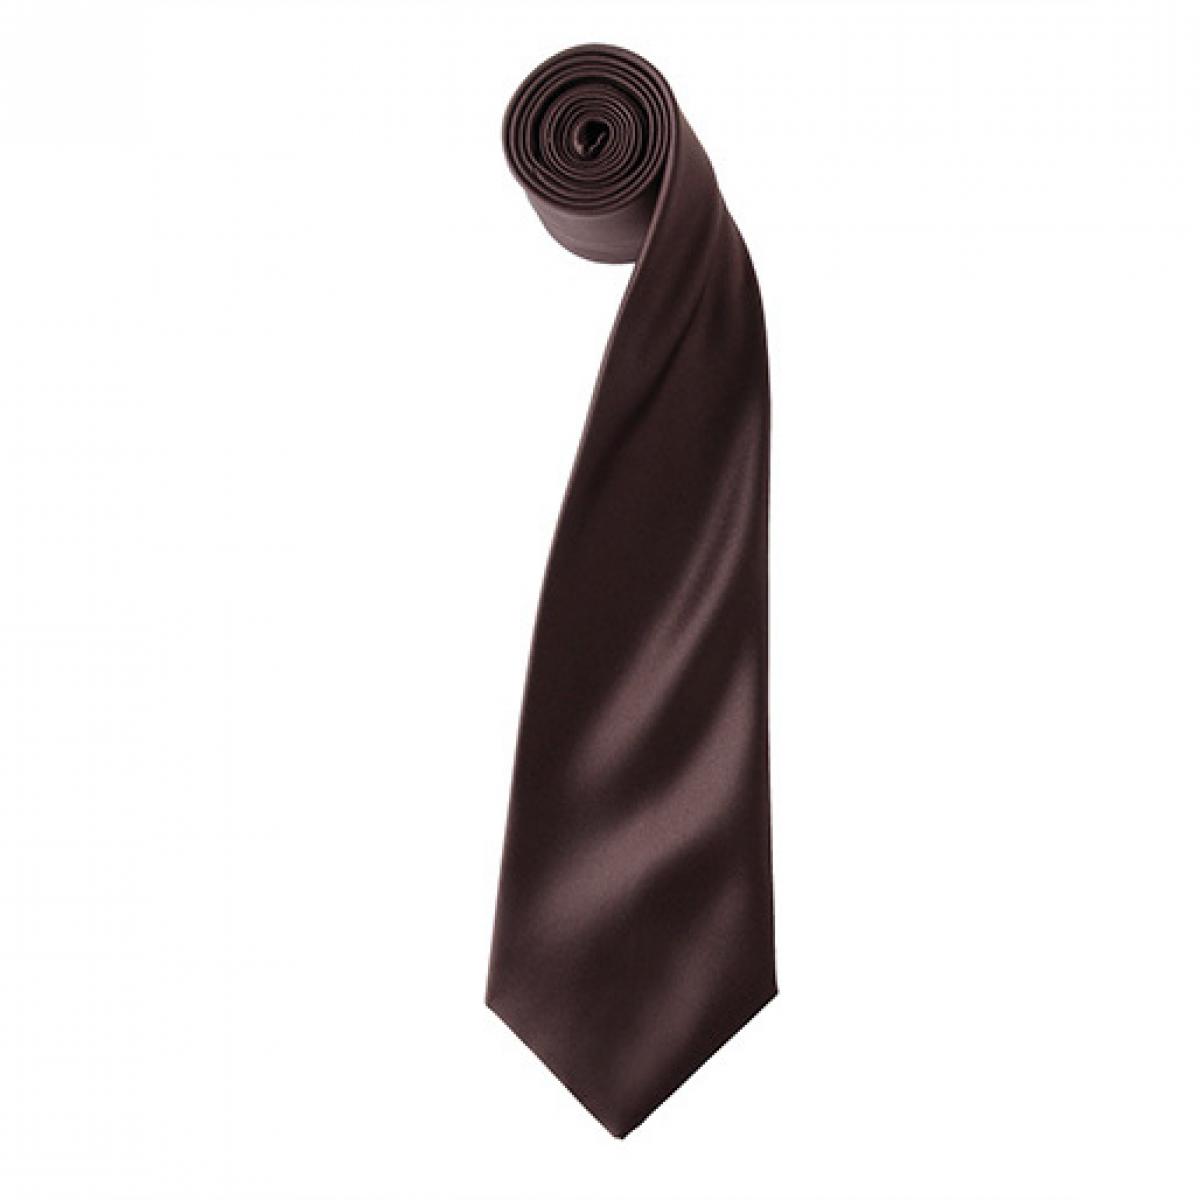 Hersteller: Premier Workwear Herstellernummer: PR750 Artikelbezeichnung: Satin Tie ´Colours´ / 144 x 8,5 cm Farbe: Brown (ca. Pantone 476)